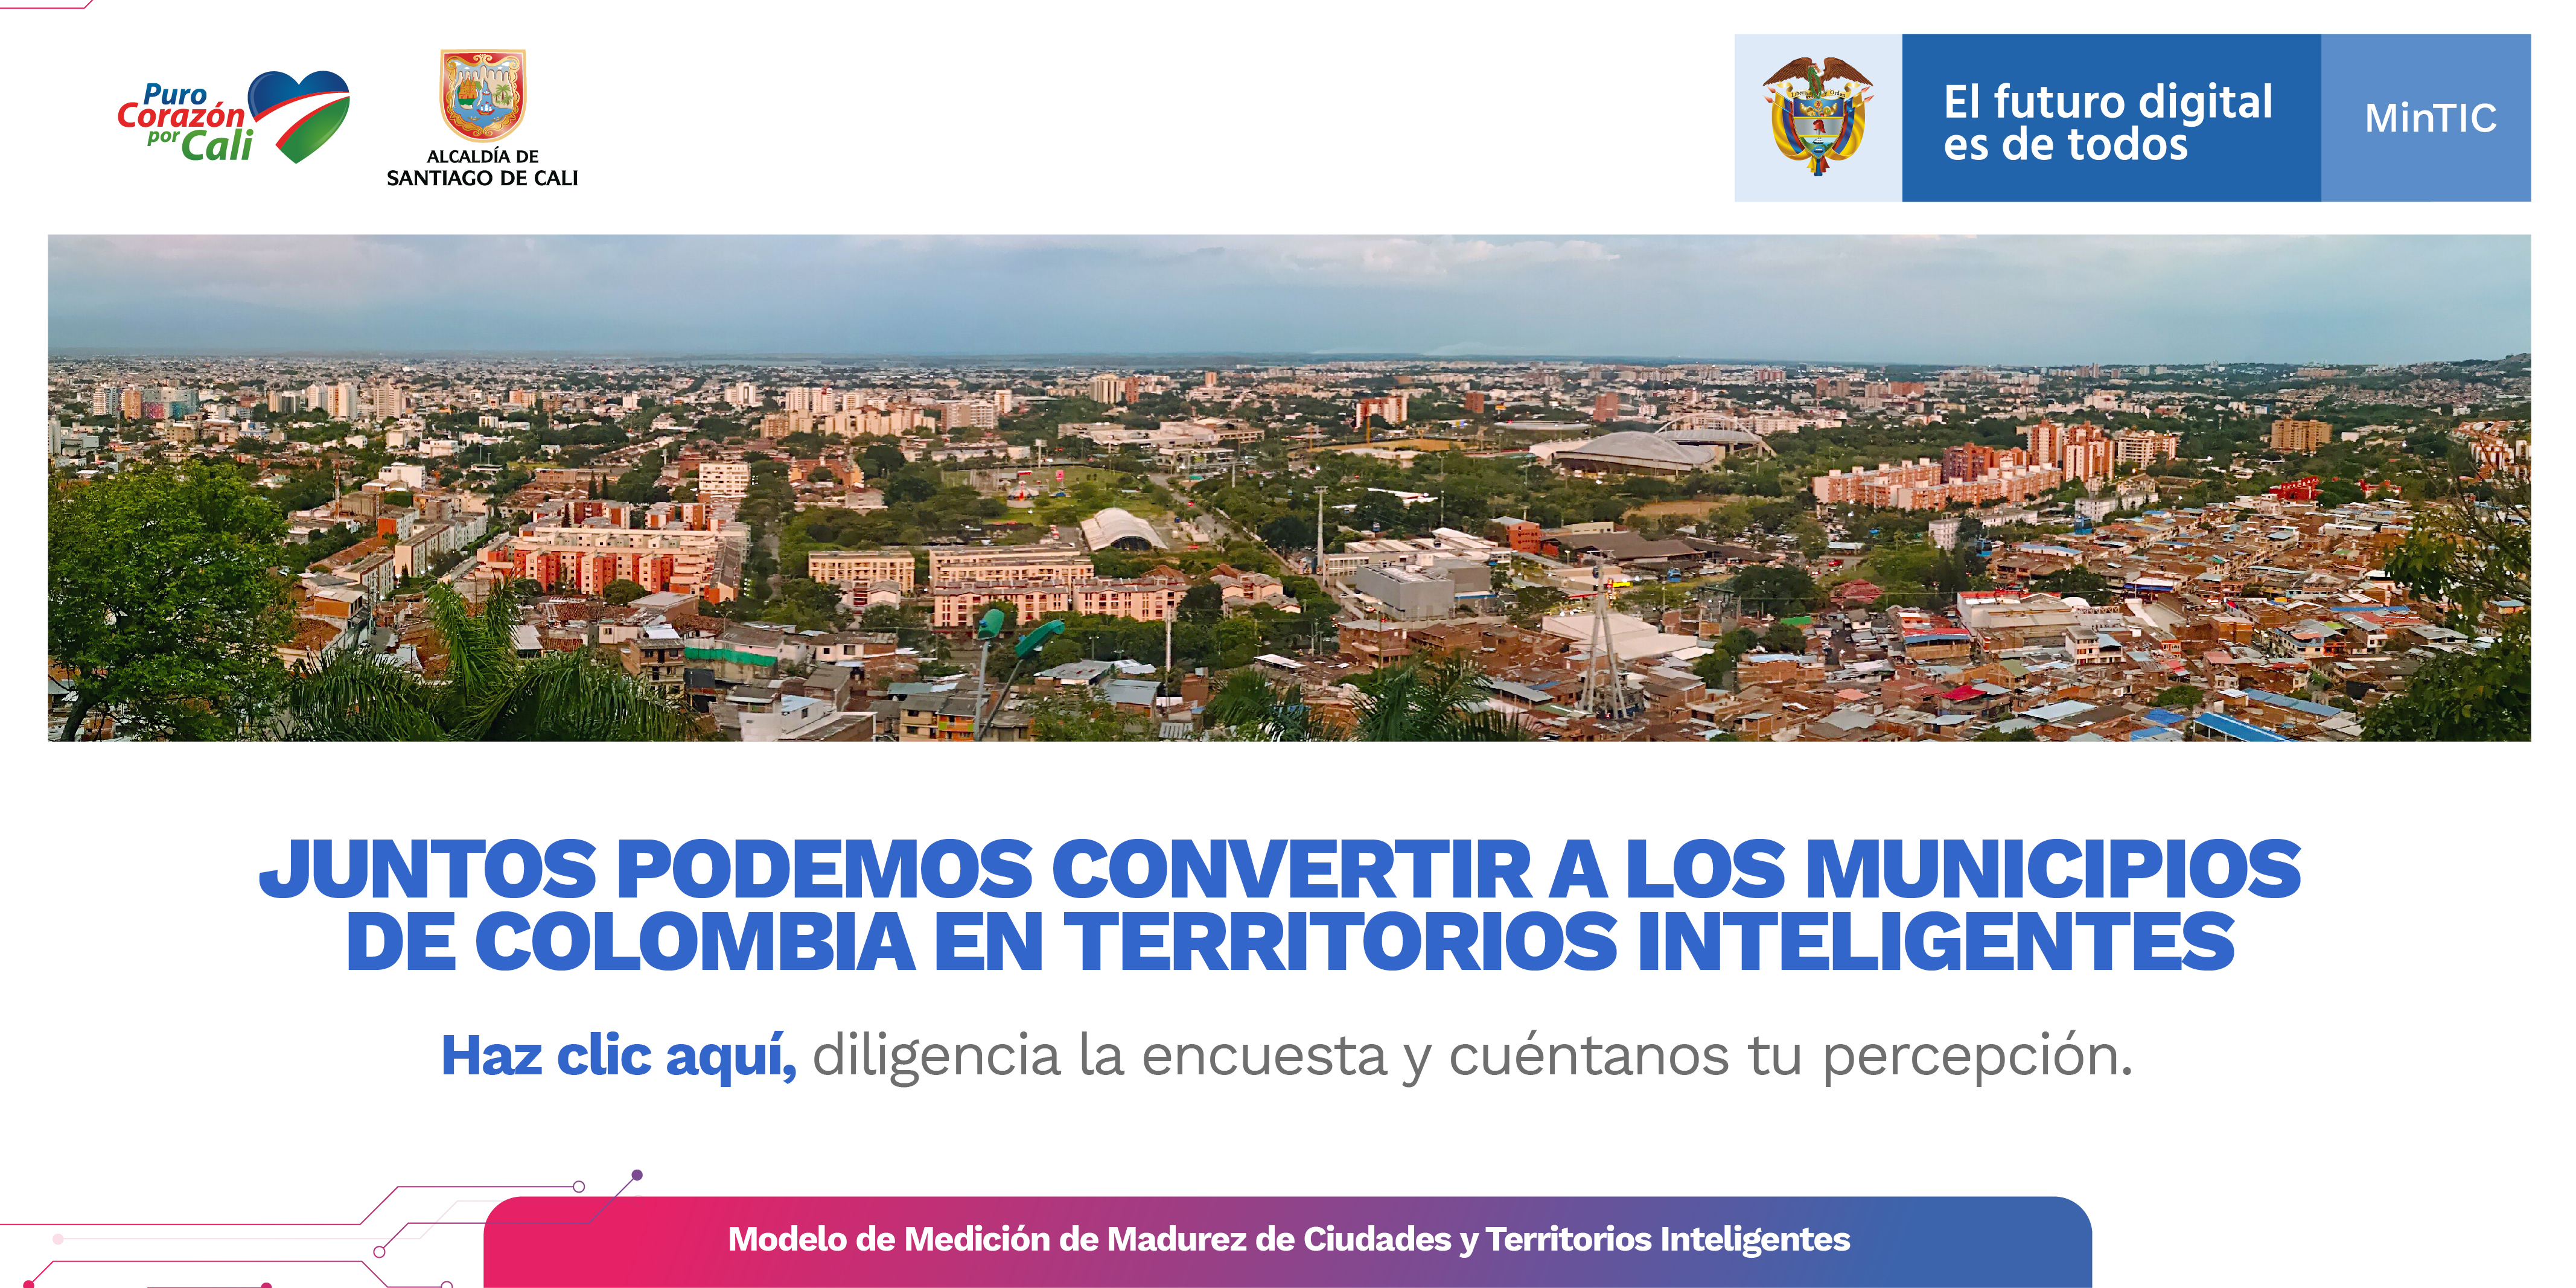 JUNTOS PODEMOS CONVERTIR A LOS MUNICIPIOS DE COLOMBIA EN TERRITORIOS INTELIGENTES